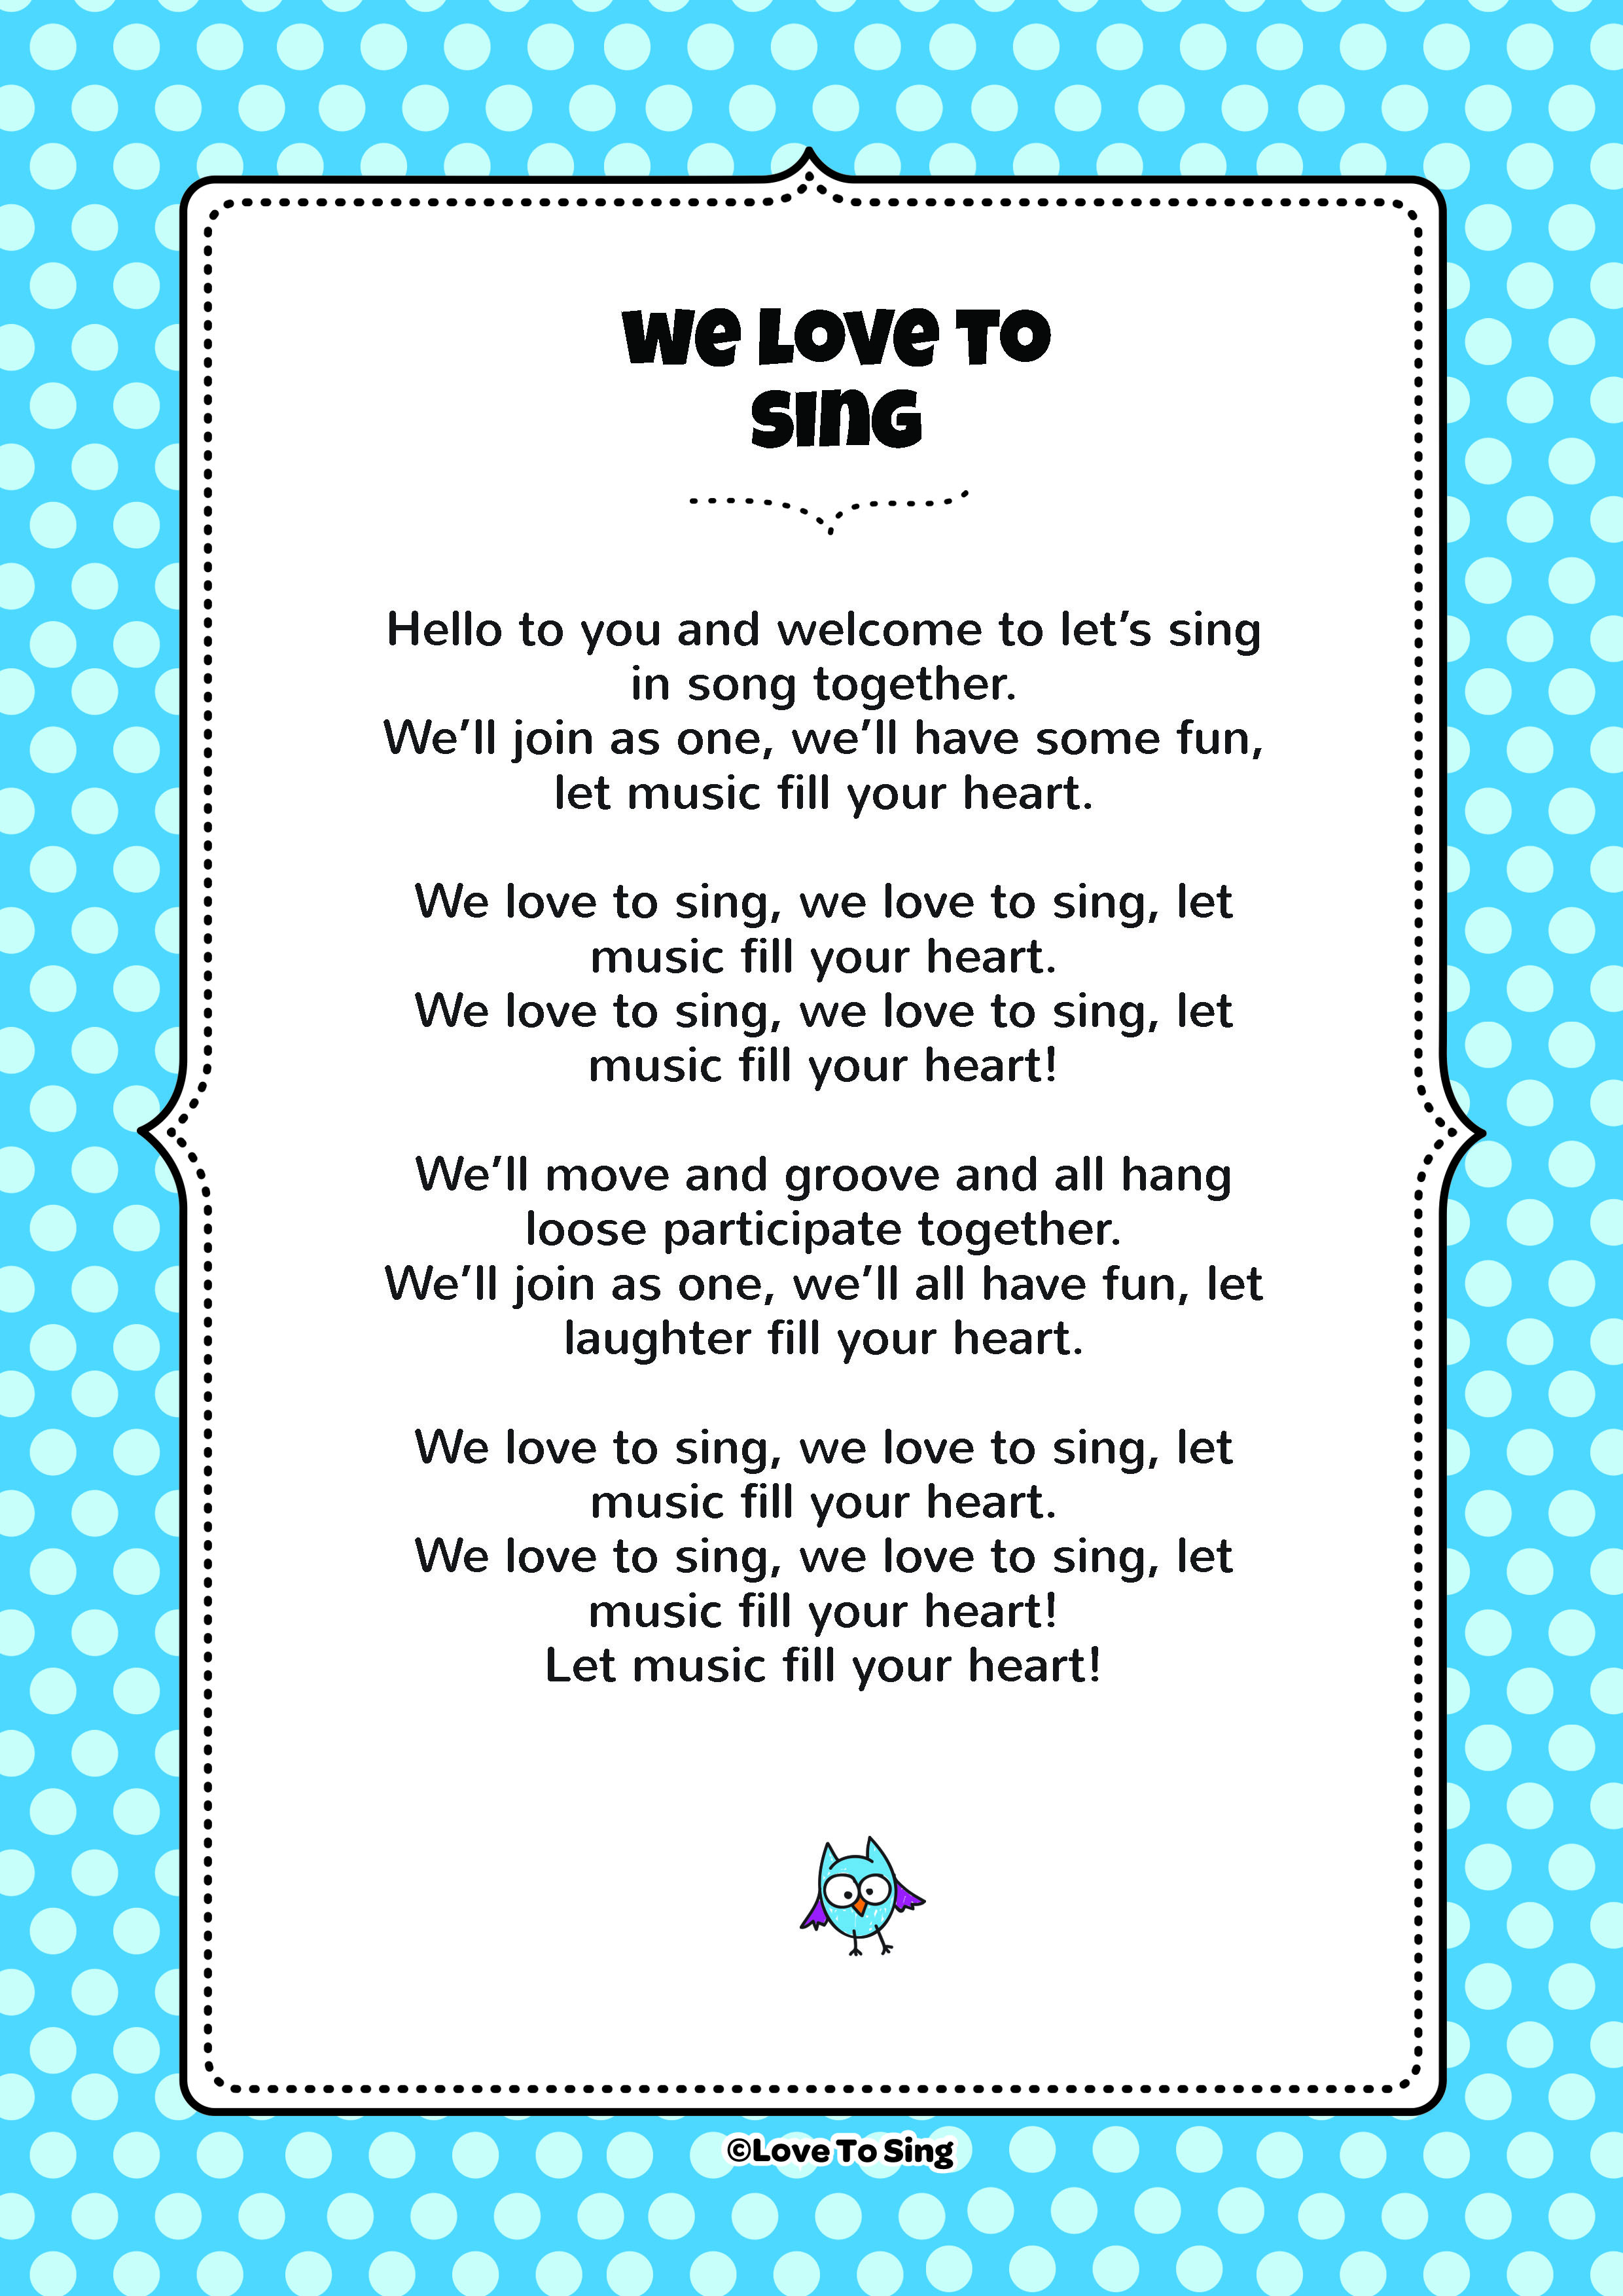 Sing singing singing sing текст песни